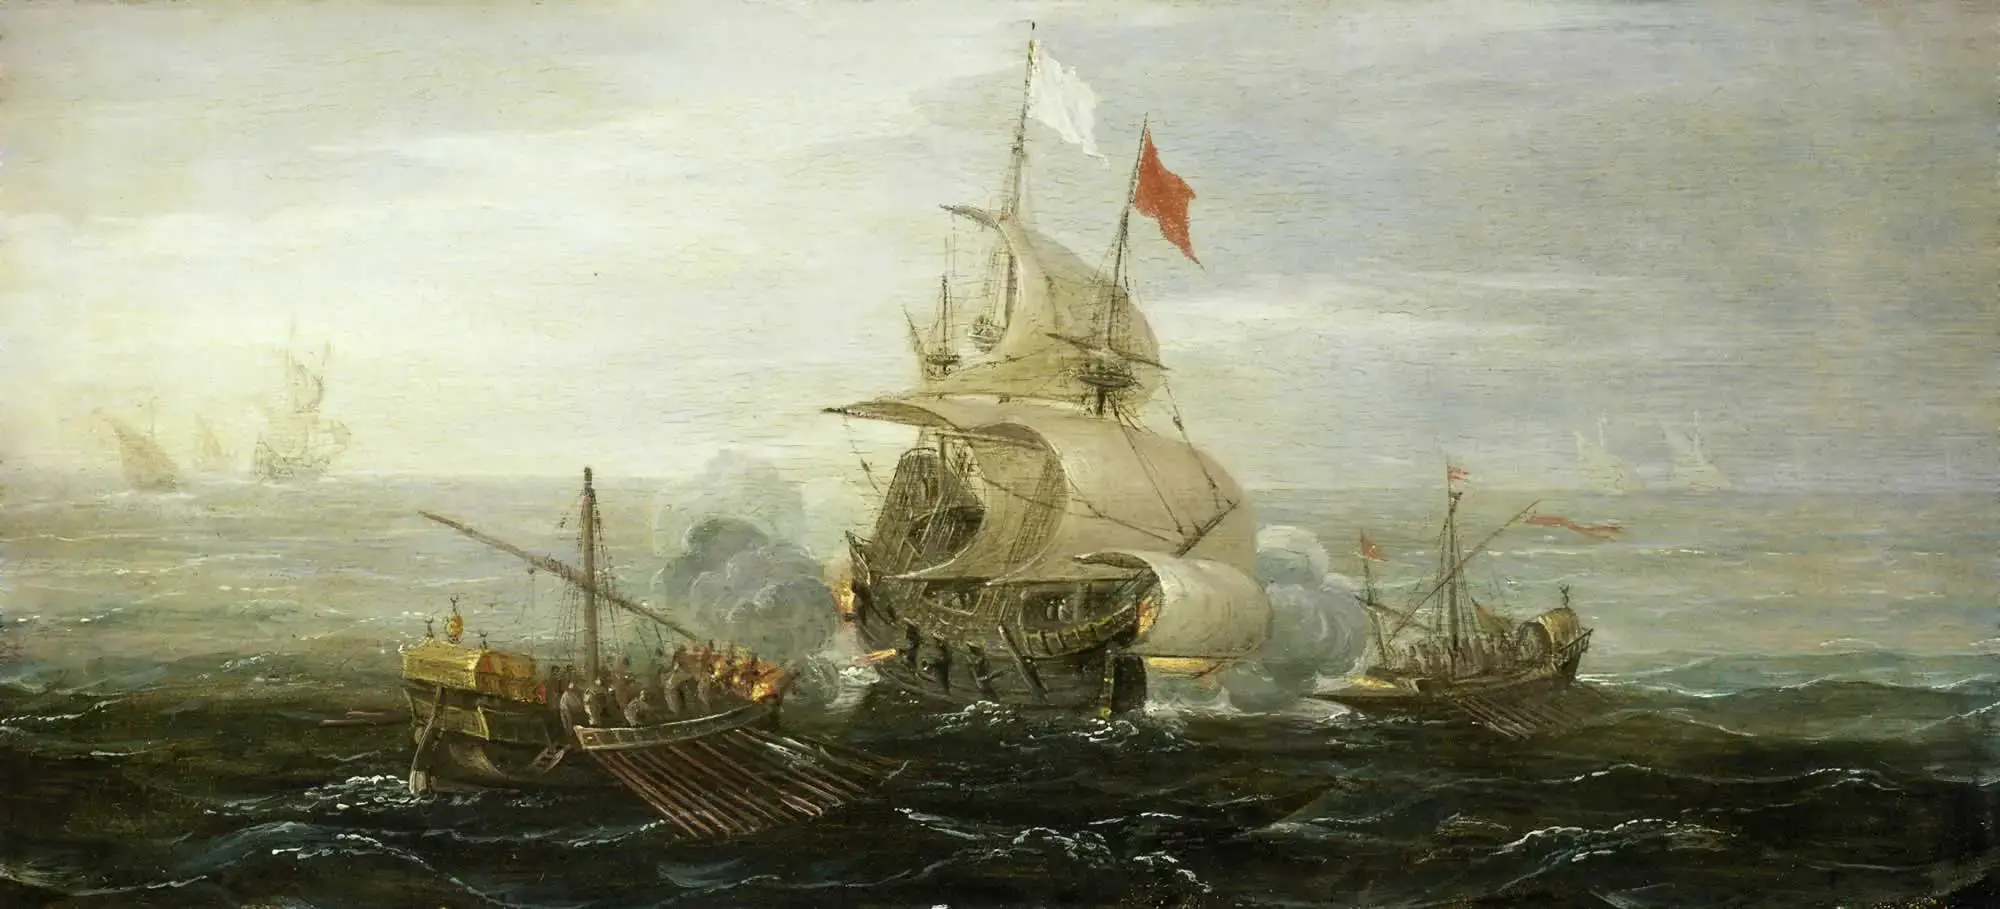 Llamas, batallas y robos: la historia de los piratas que aterrorizaron el Mediterráneo